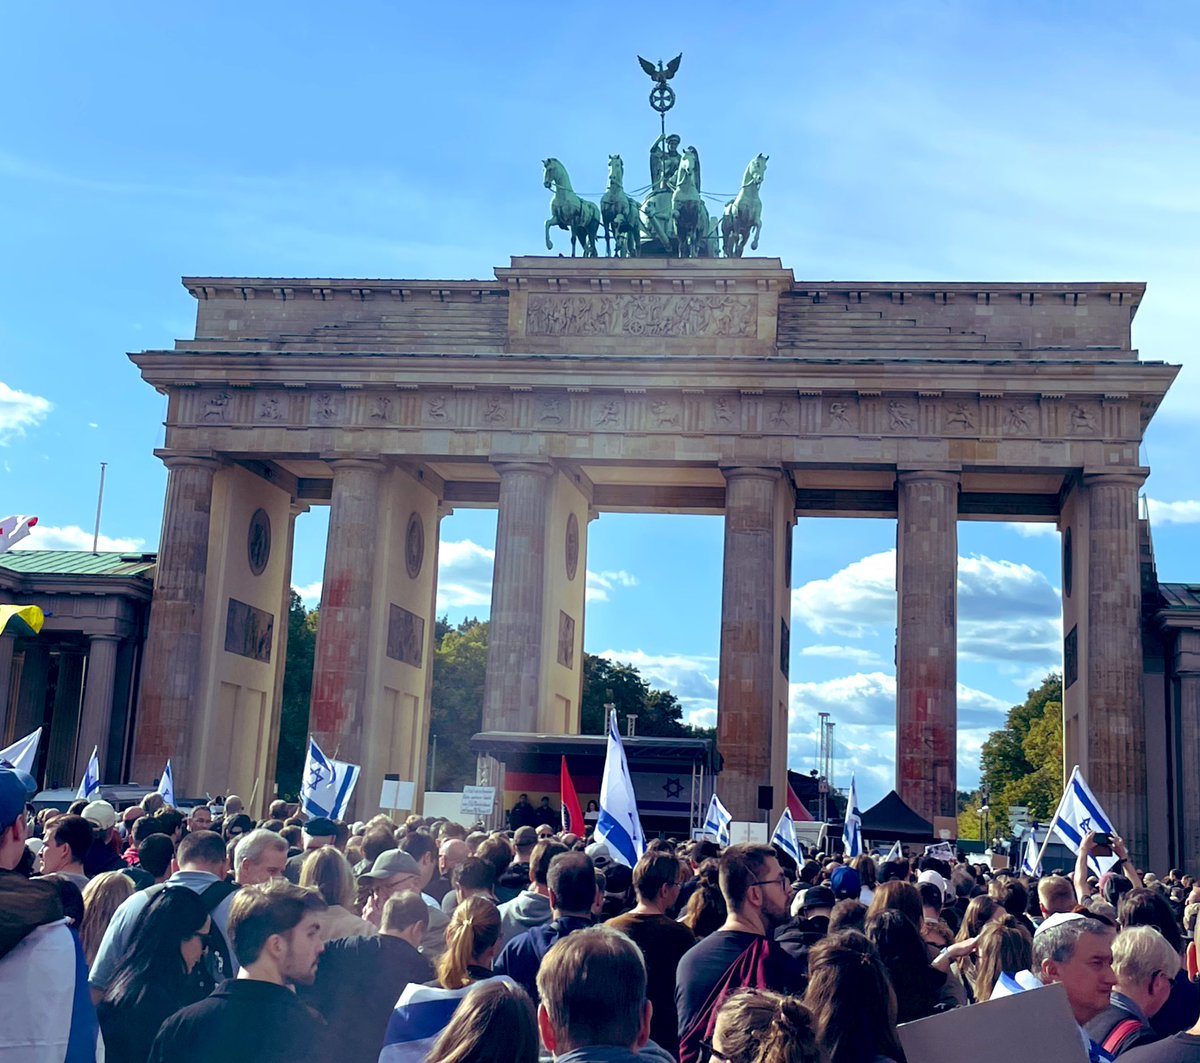 Mehr als tausend Menschen haben sich heute vor dem Brandenburger Tor versammelt, um Solidarität mit #Israel zu zeigen. In der Hauptstadt, von der einst der Holocaust geplant und verübt worden ist, stehen wir heute zusammen gegen Antisemitismus in all seinen Formen. #b0810